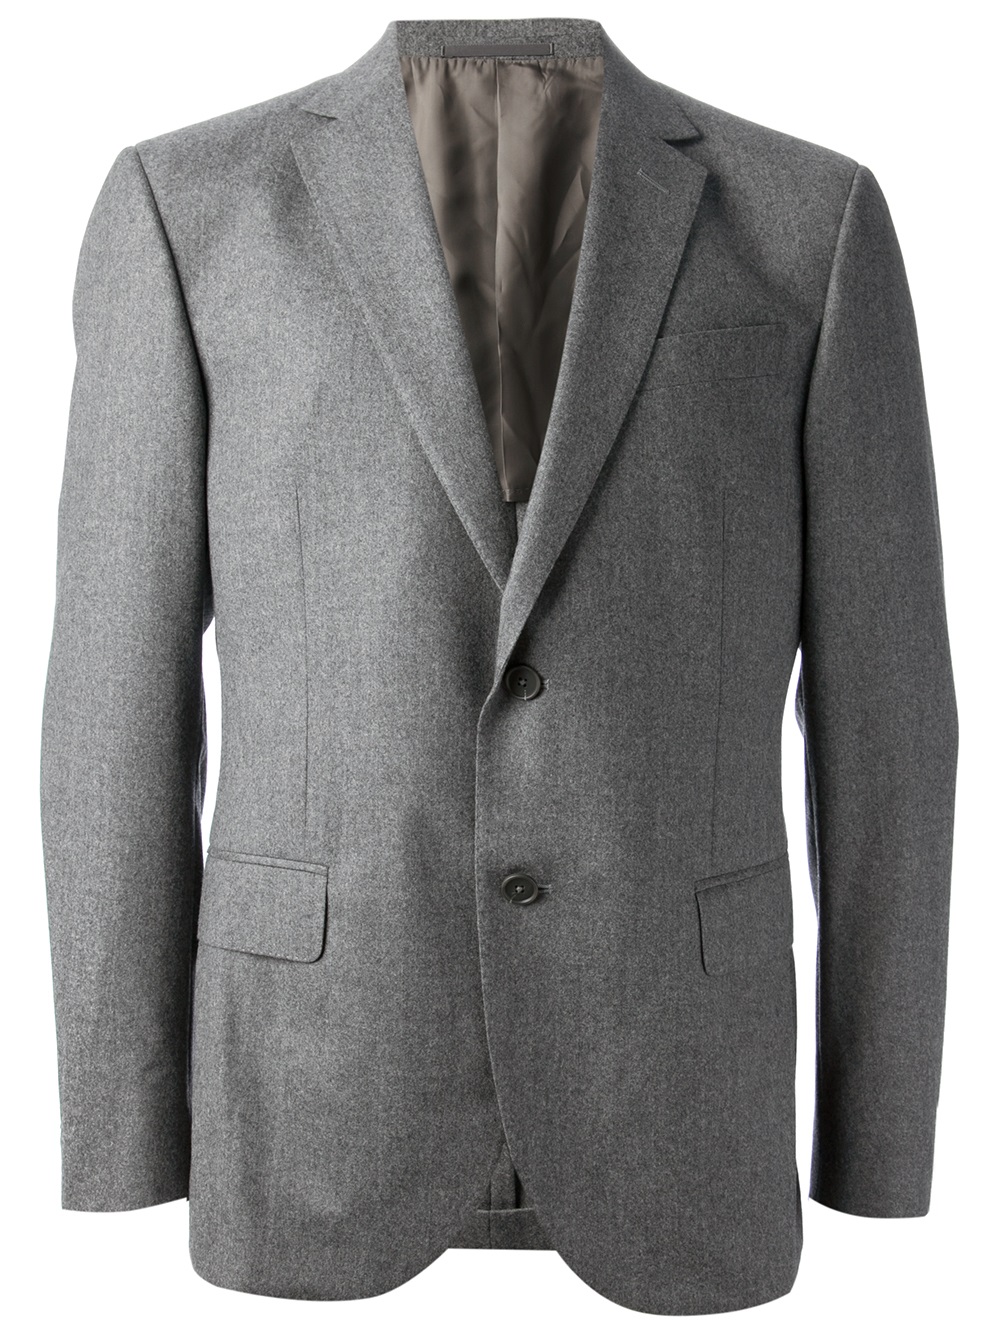 Lyst - Ermenegildo Zegna Wool Suit in Gray for Men